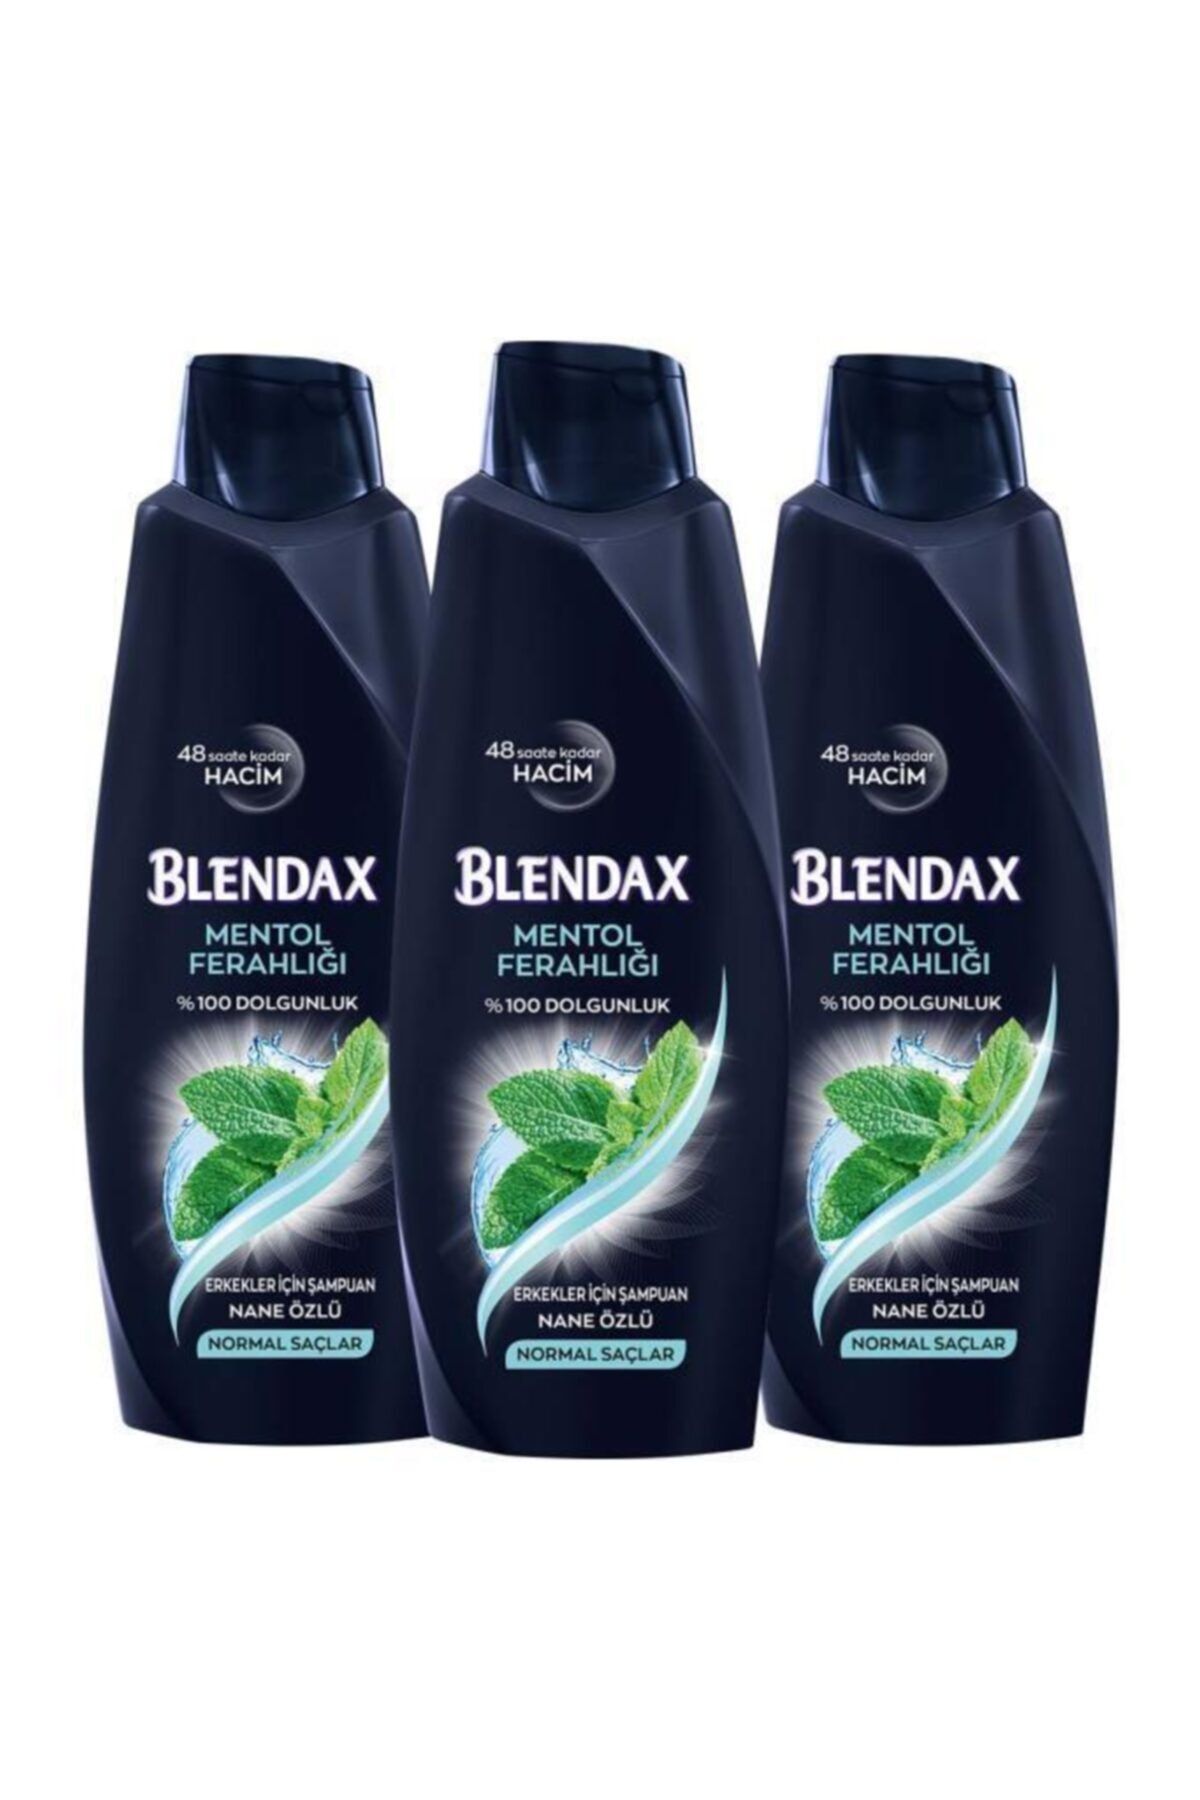 Blendax Erkekler Için Mentollü Şampuan 500 Ml X 3 Adet